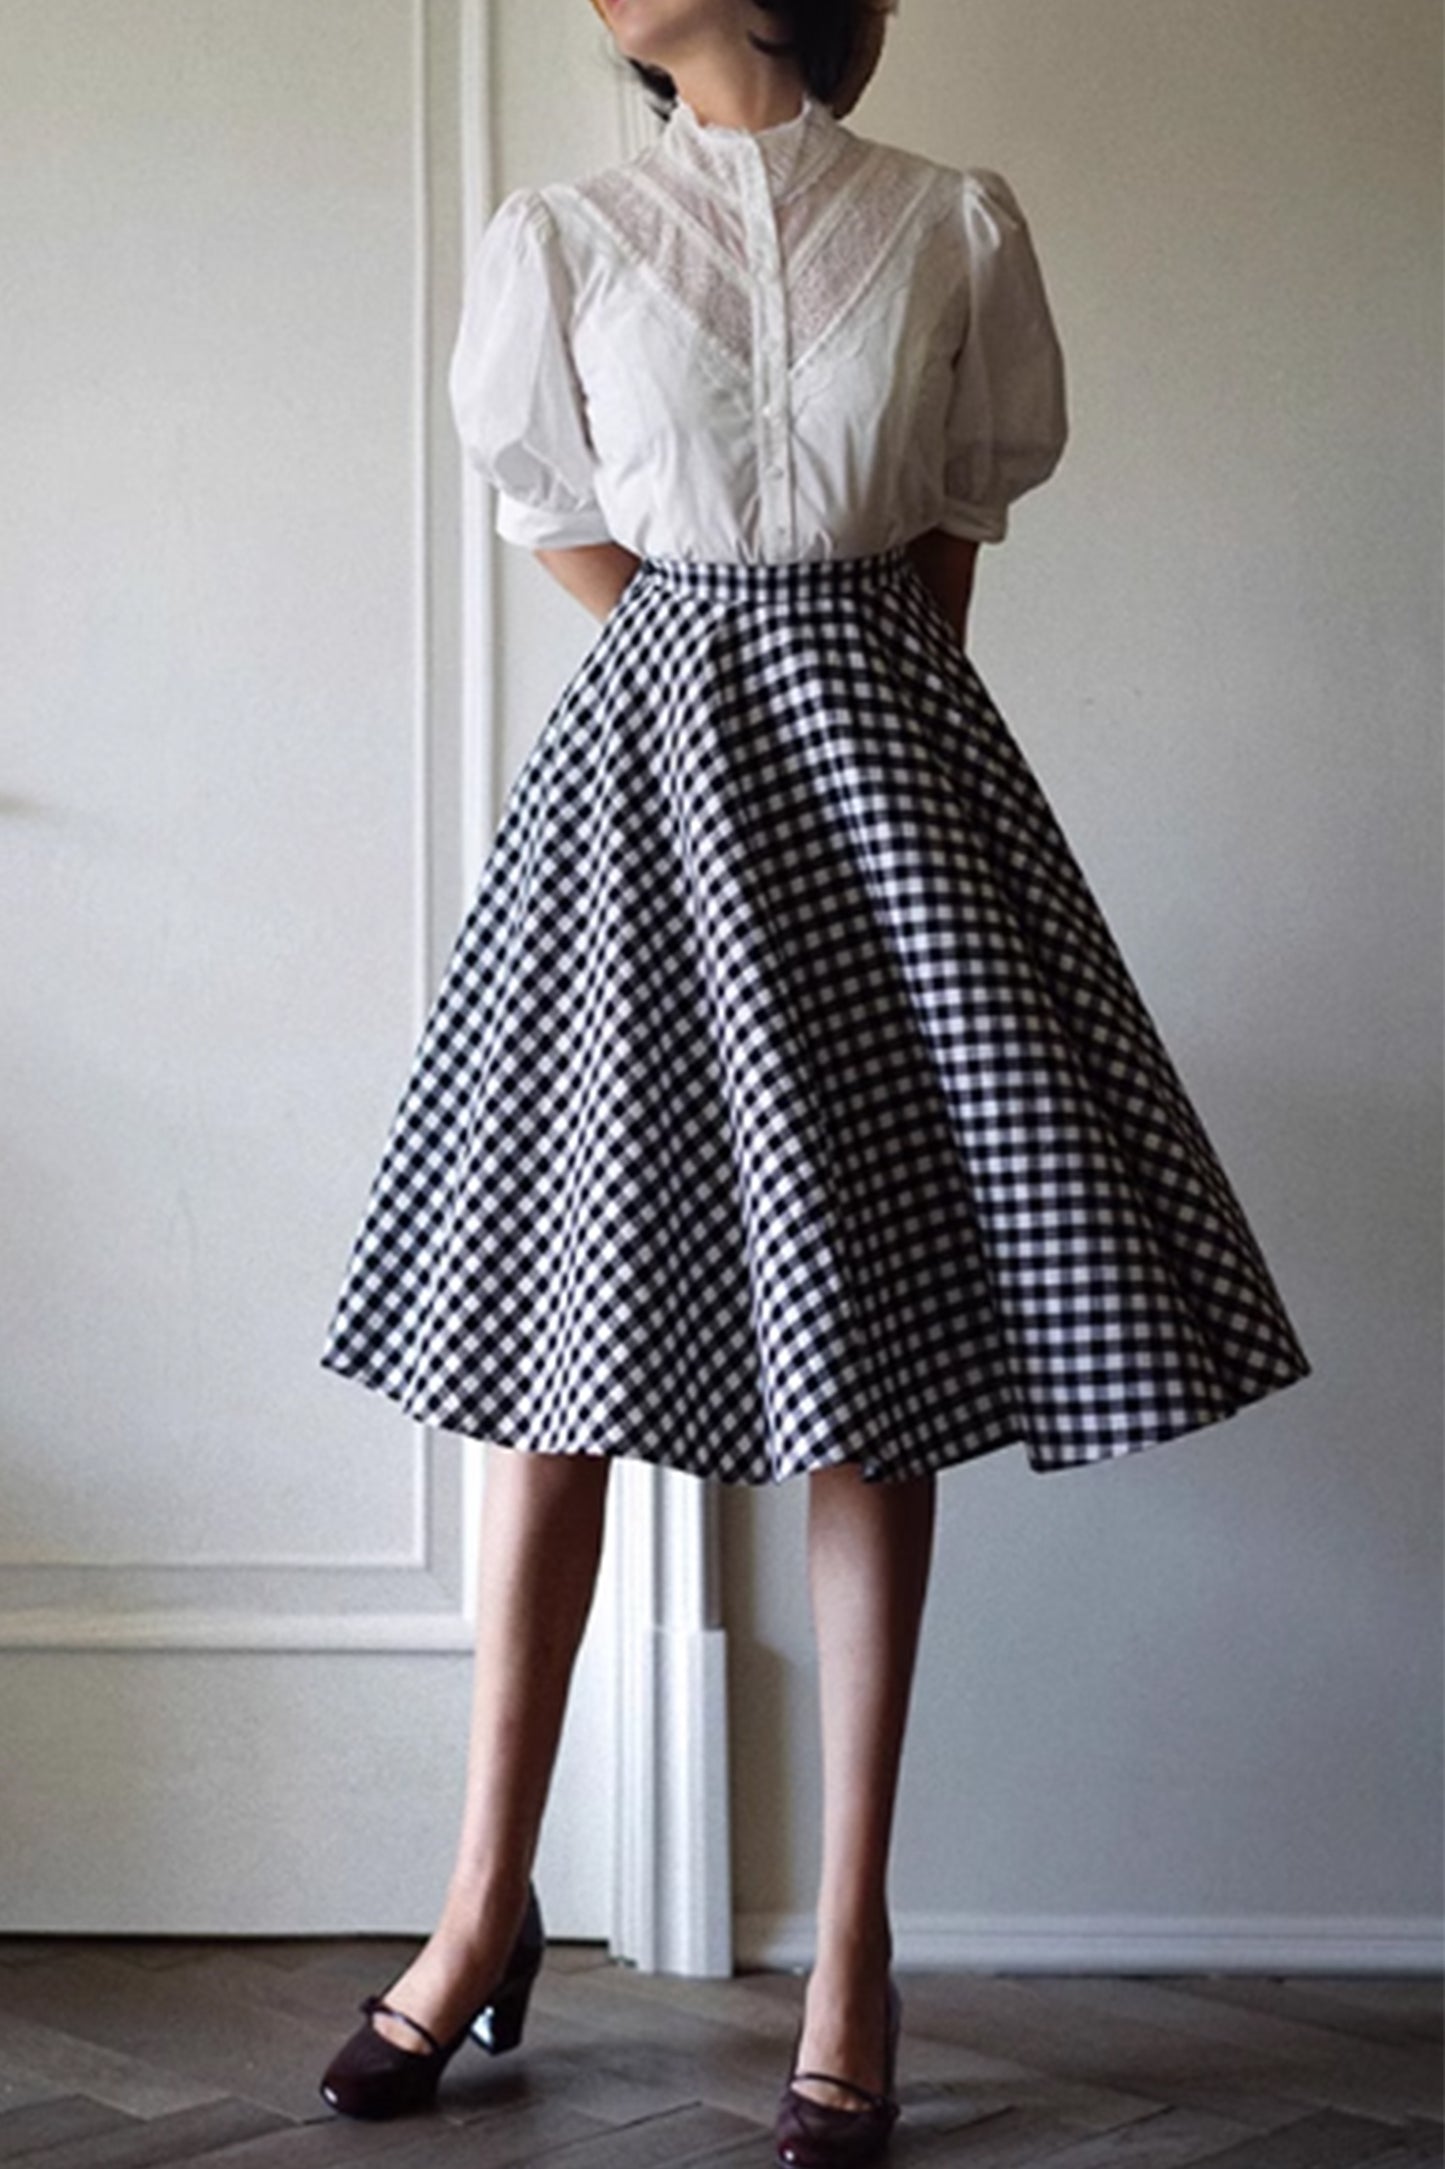 Black and white plaid knee length skirt 4866